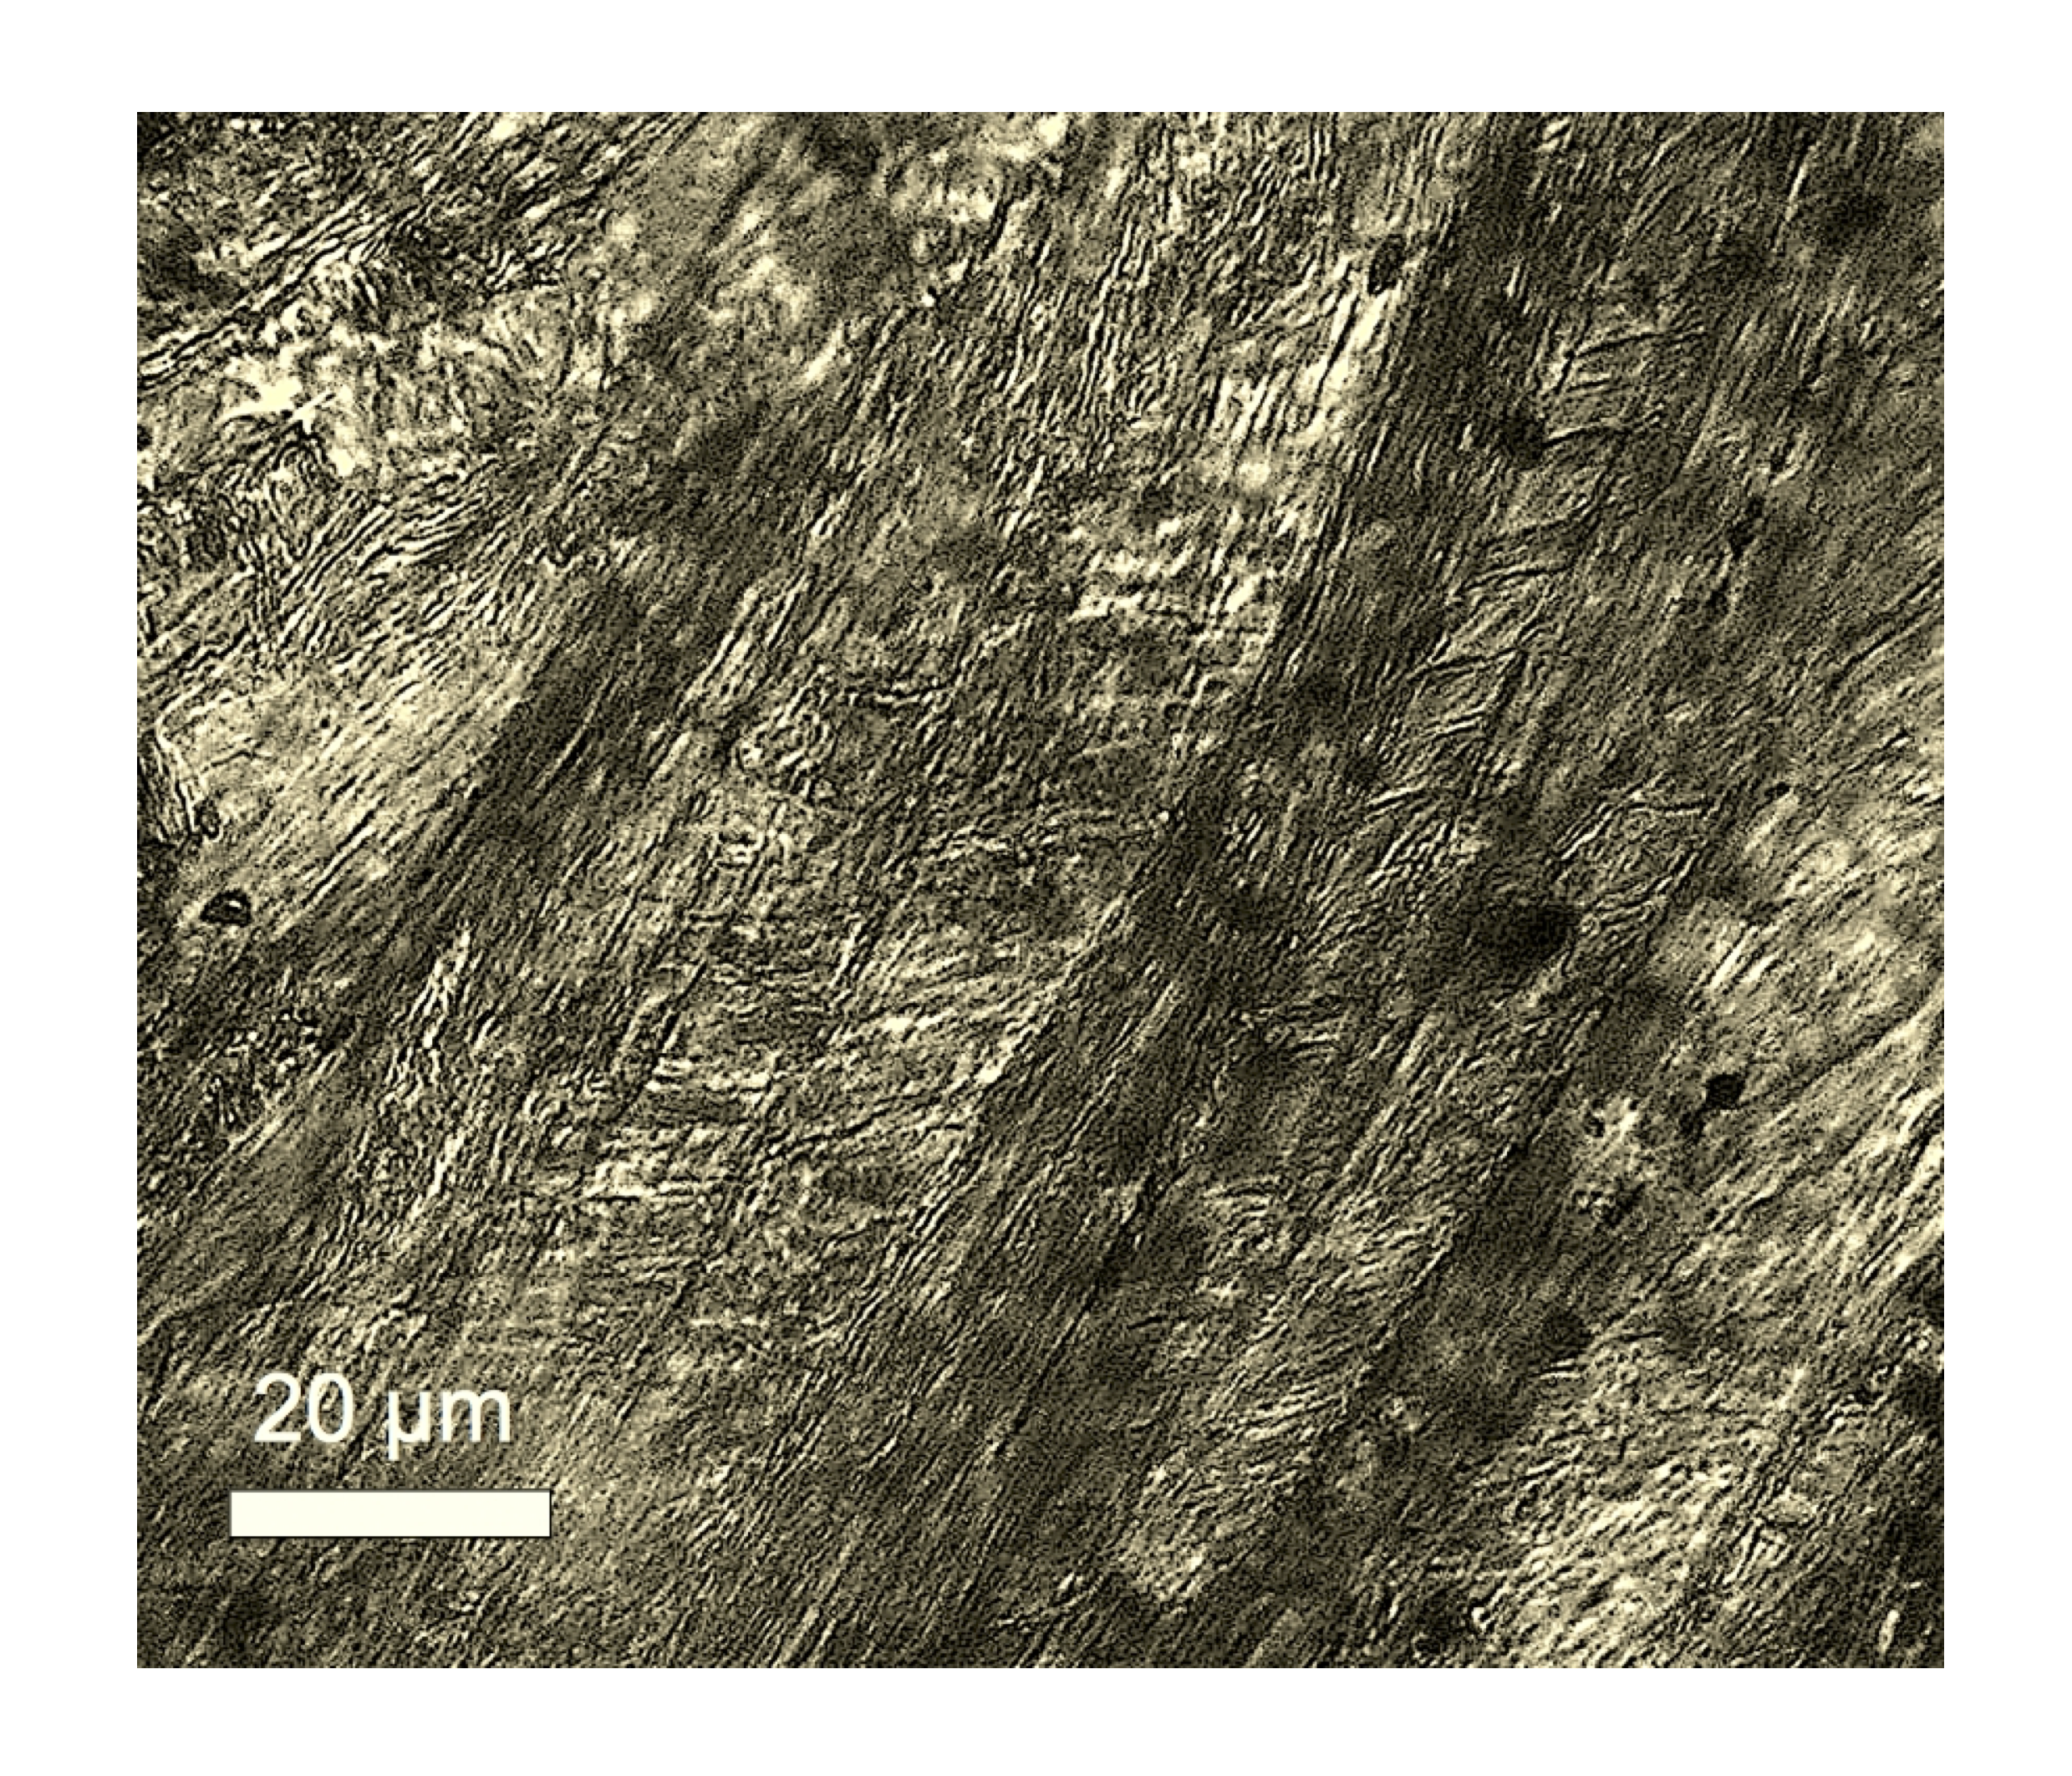 shocked calcite multiple sets of planar deformation features Rubielos de la Cérida impact